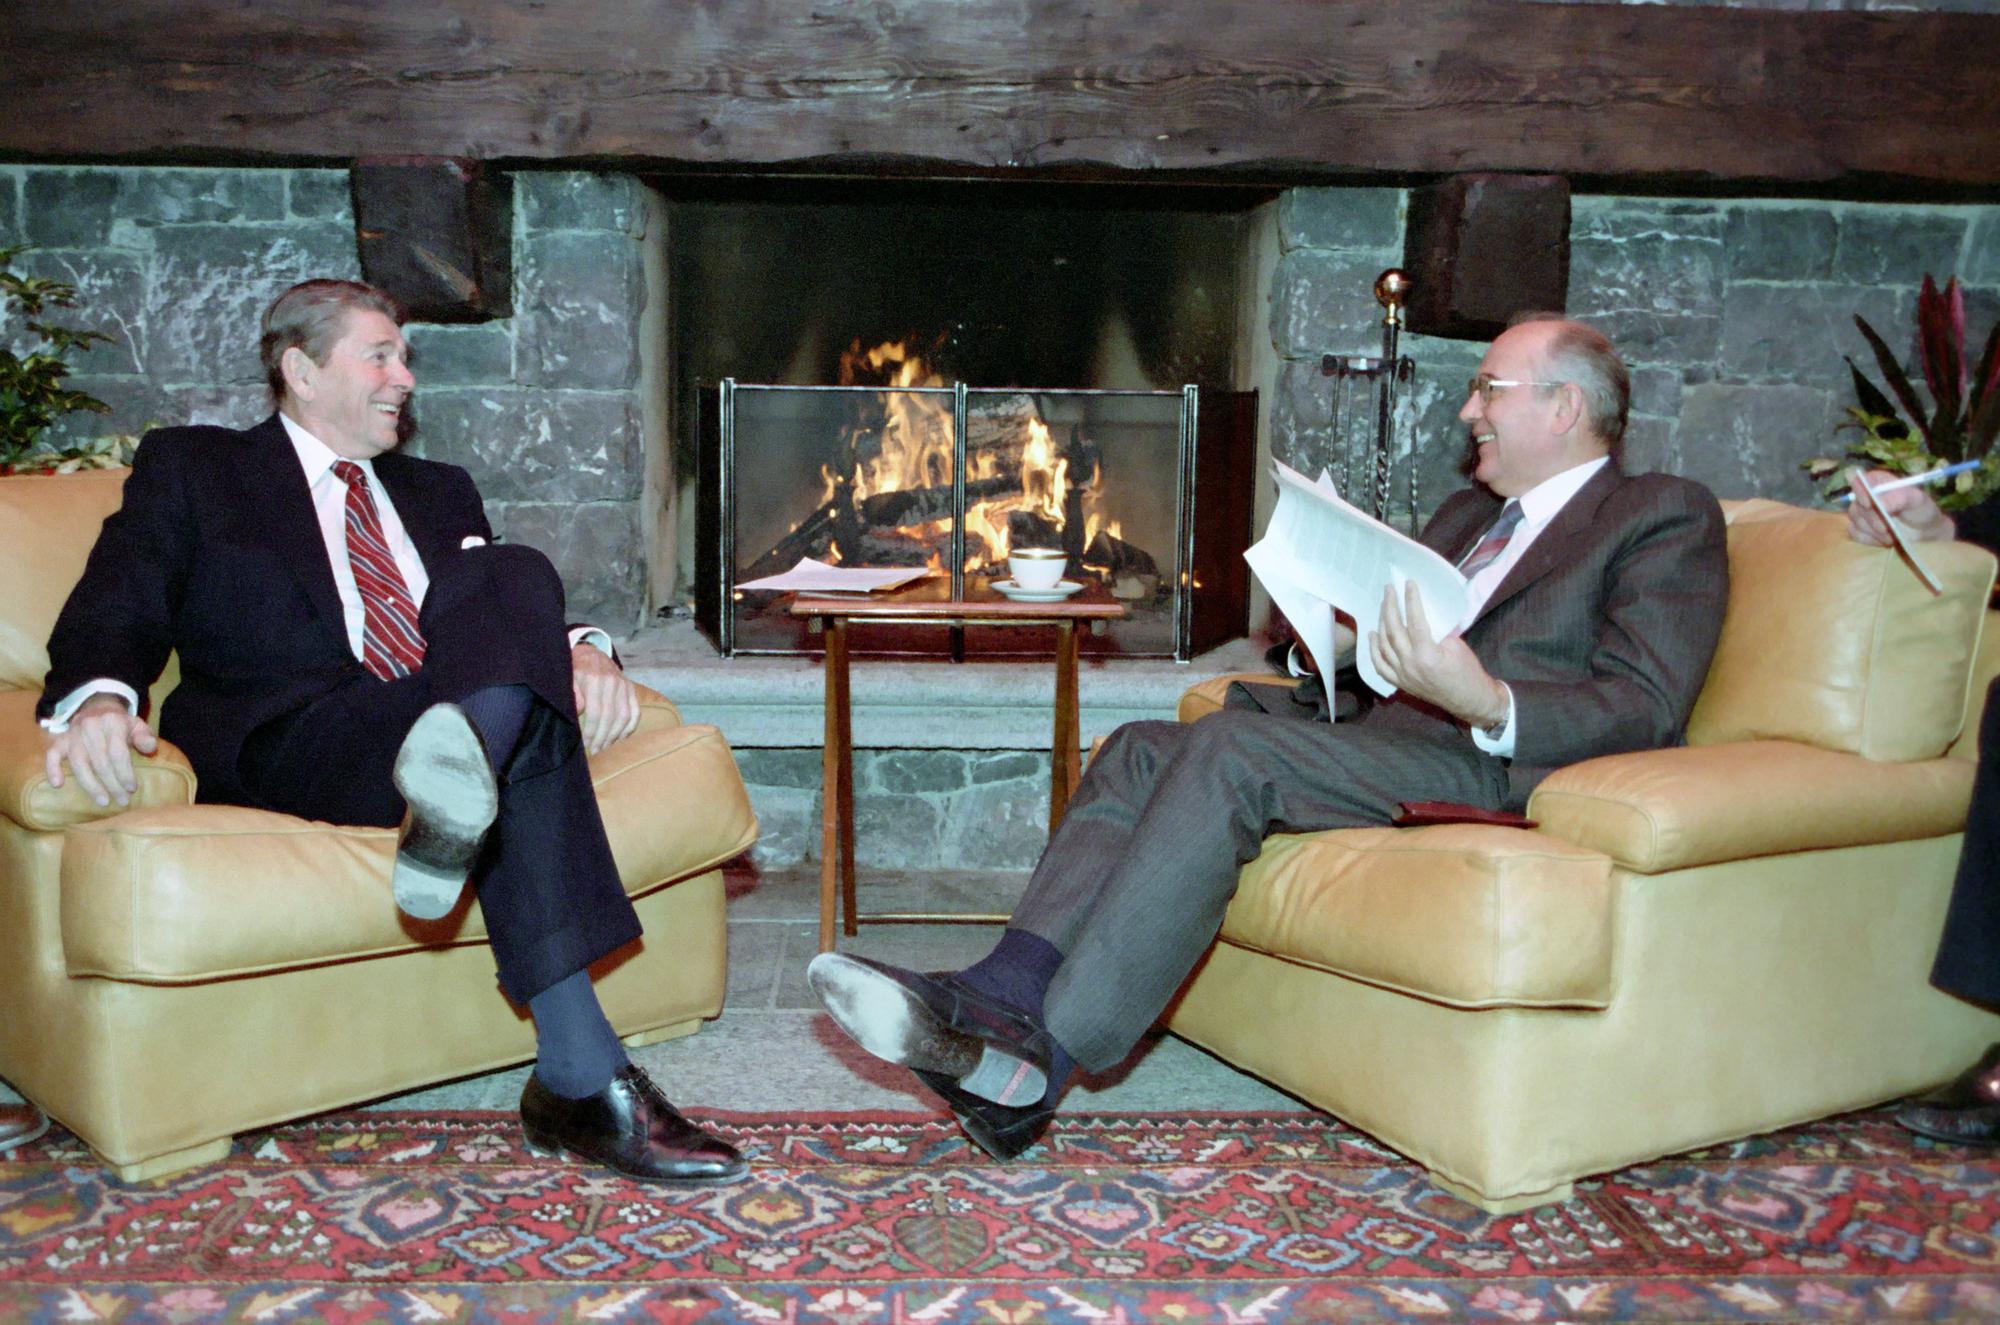 Restée dans les annales de l'Histoire, cette image reflète la détente qui a pu s'instaurer entre les présidents Reagan et Gorbatchev lors de leur rencontre à Genève en 1985. [AFP - Ann Ronan Picture Library]